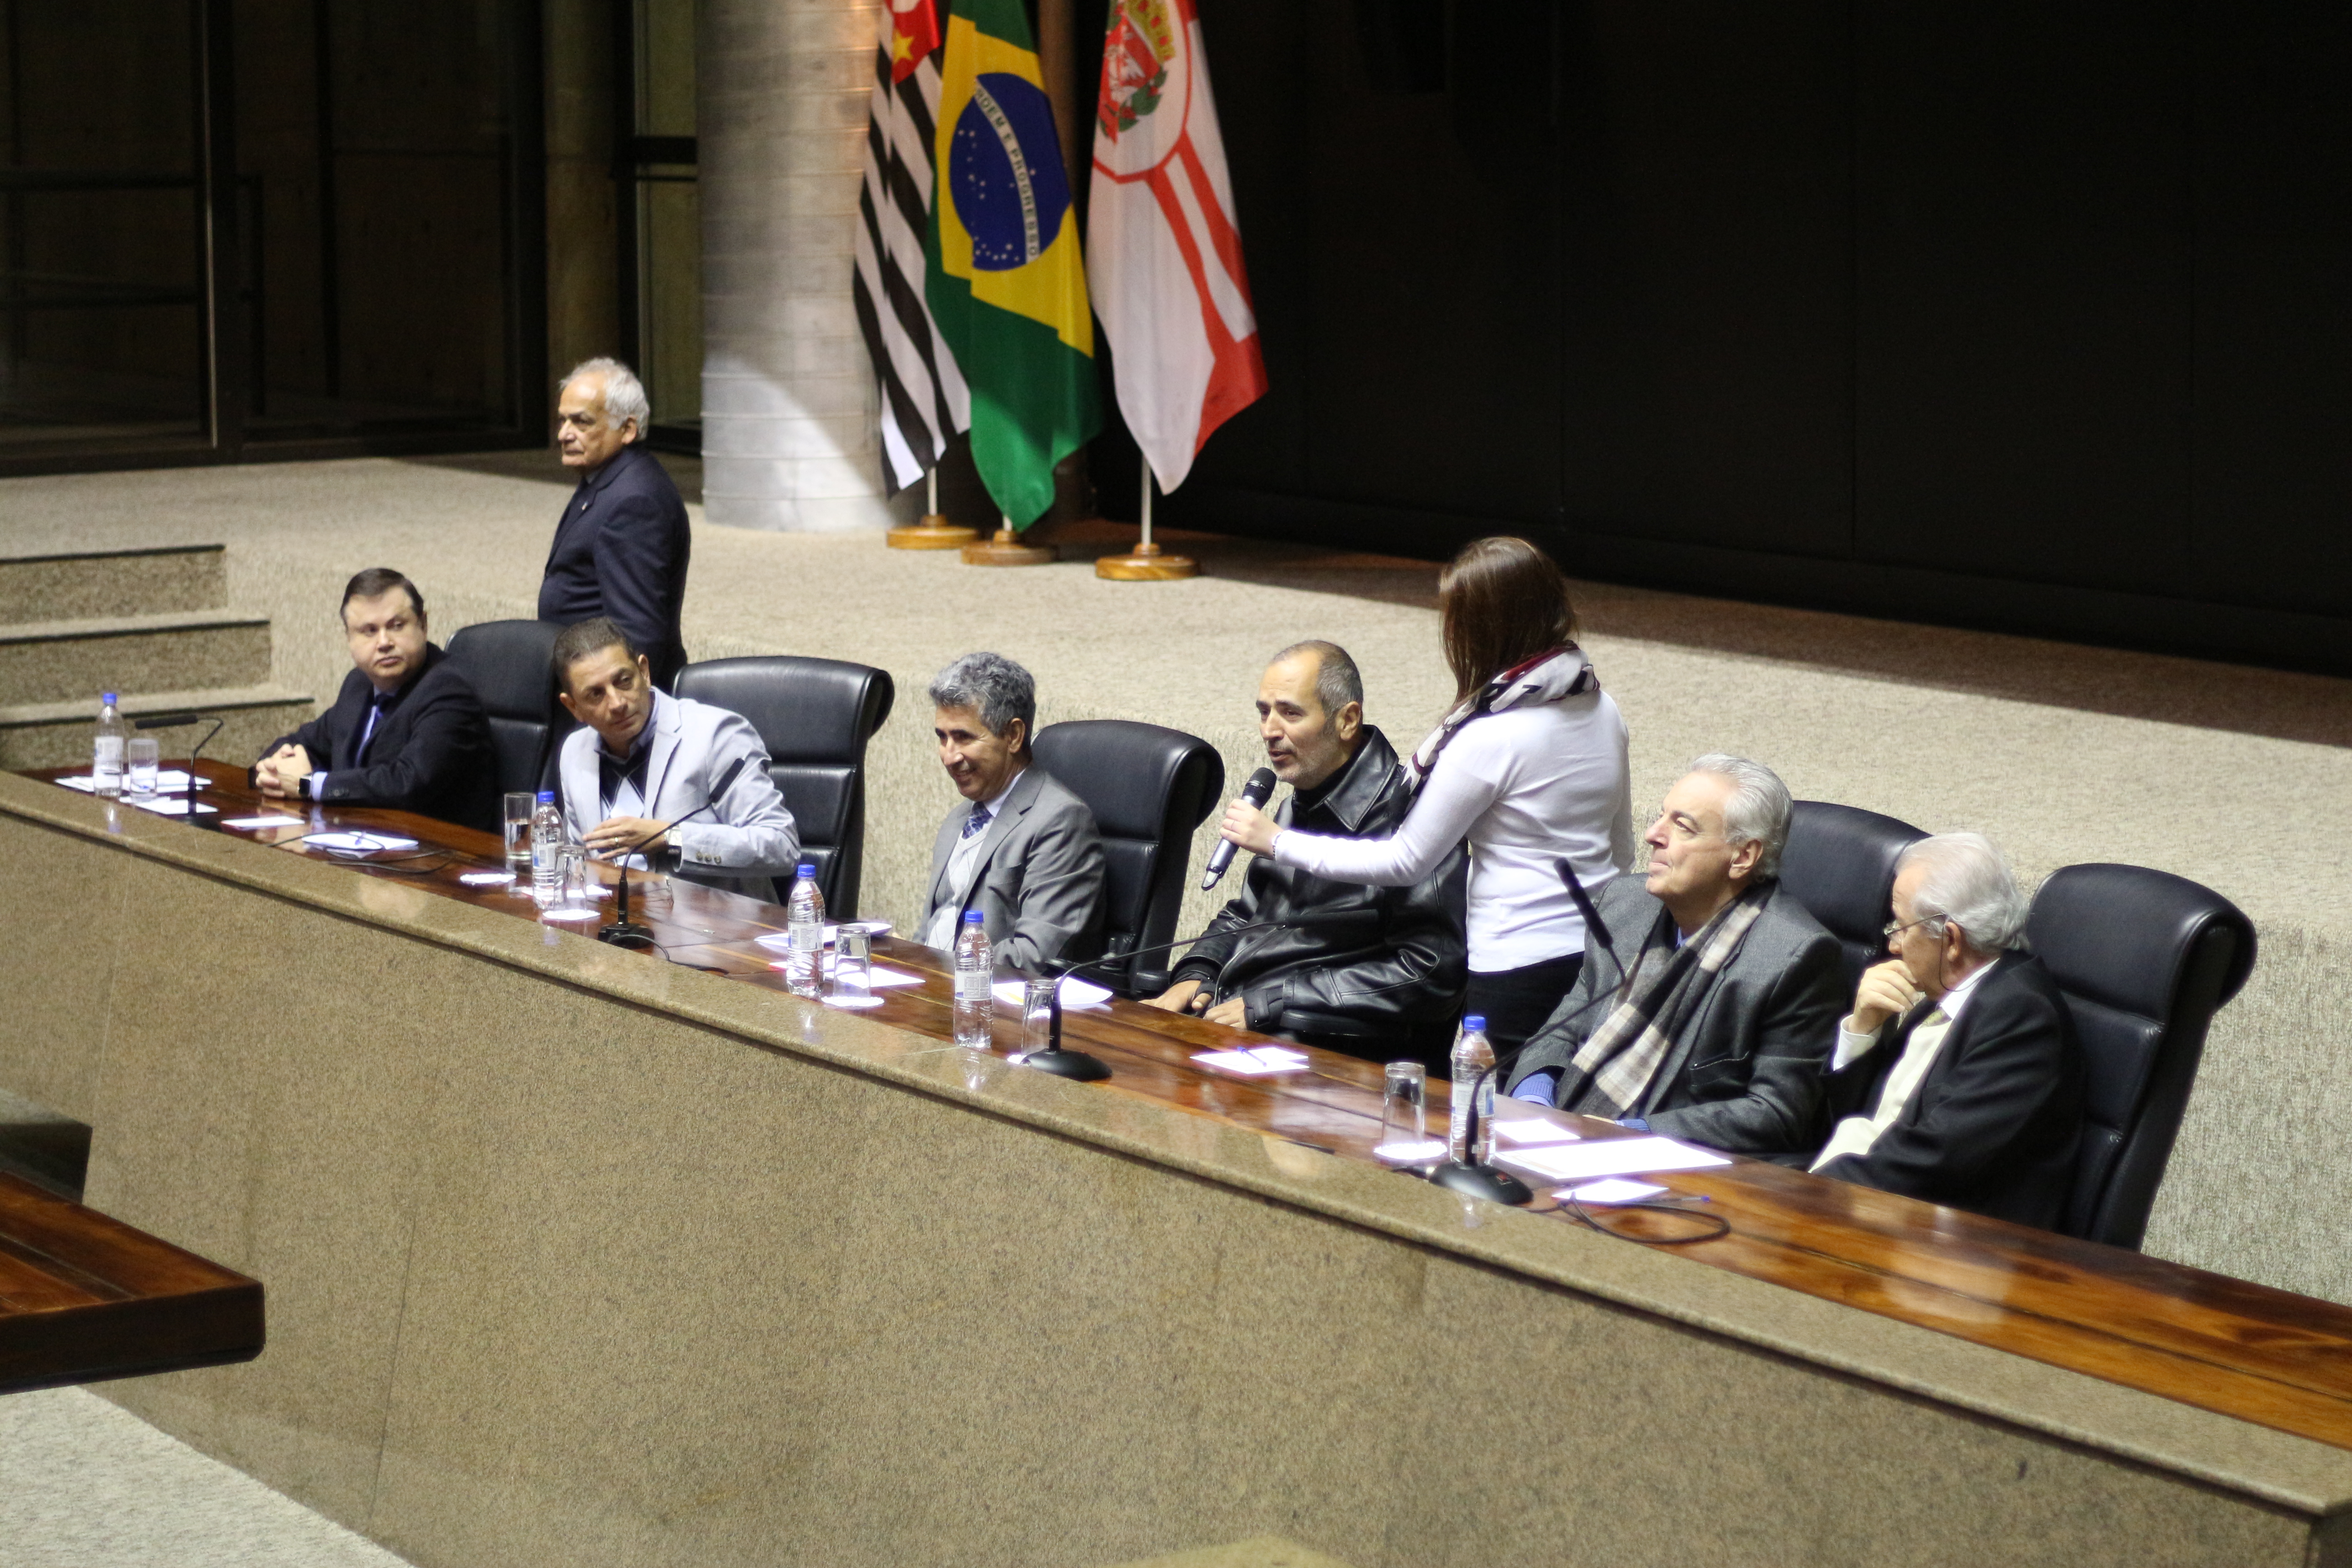  secretários e autoridades do TCM reunidos no auditório. Secretário Cid Torquato fala ao microfone.